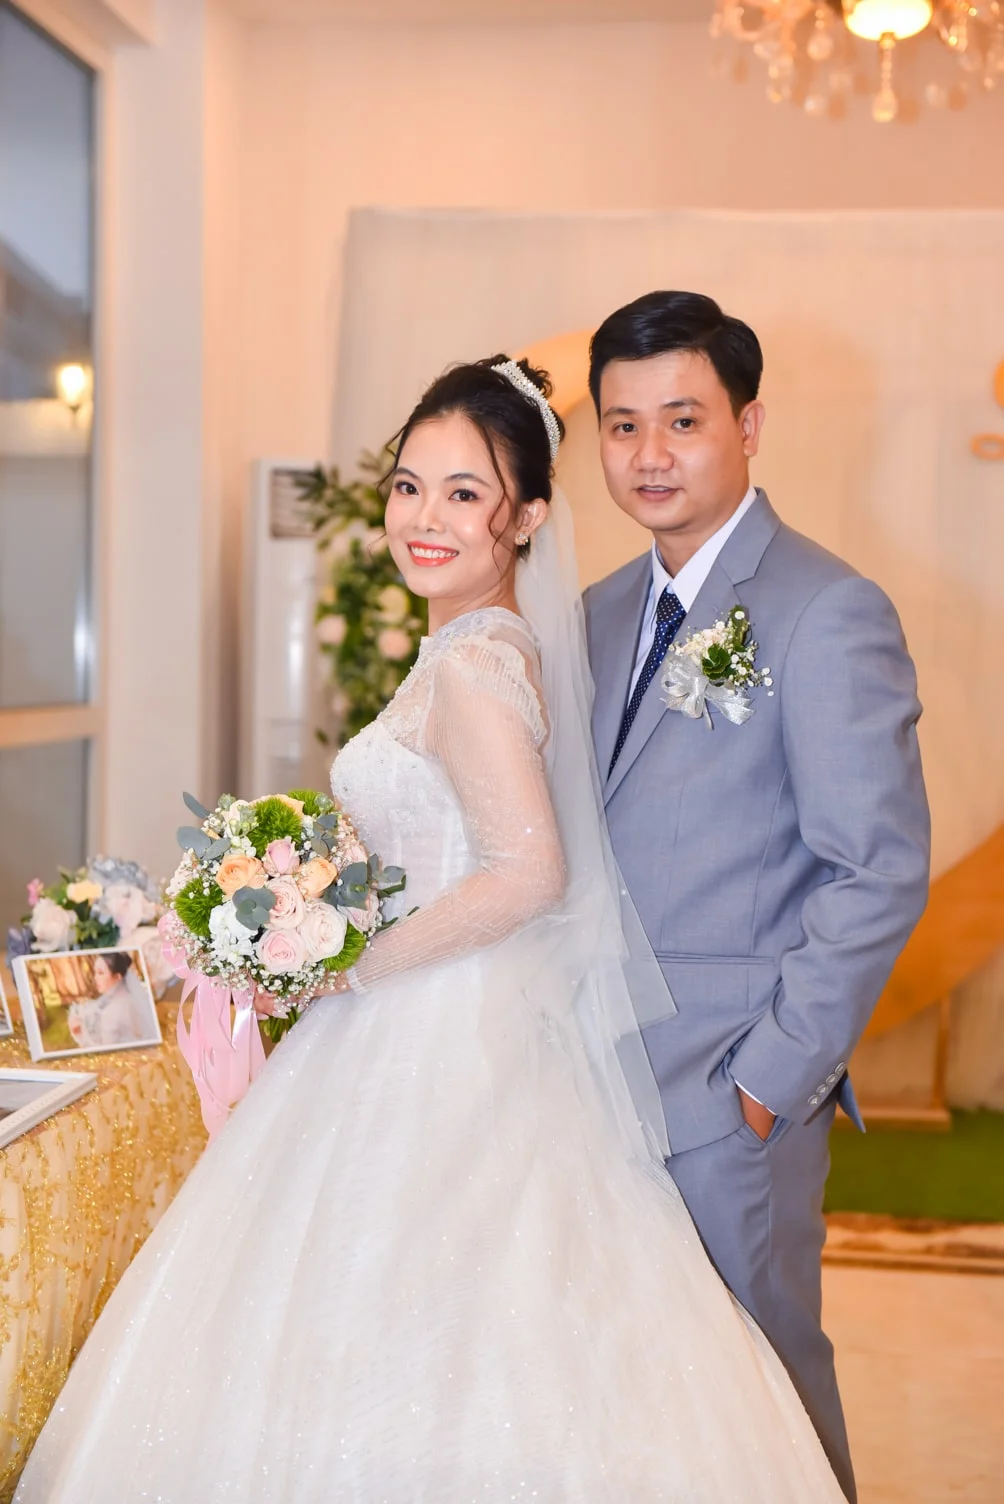 Anh tiec cuoi 3 min - Chụp hình tiệc cưới giá rẻ chất lượng tại Tp.HCM – HThao Studio